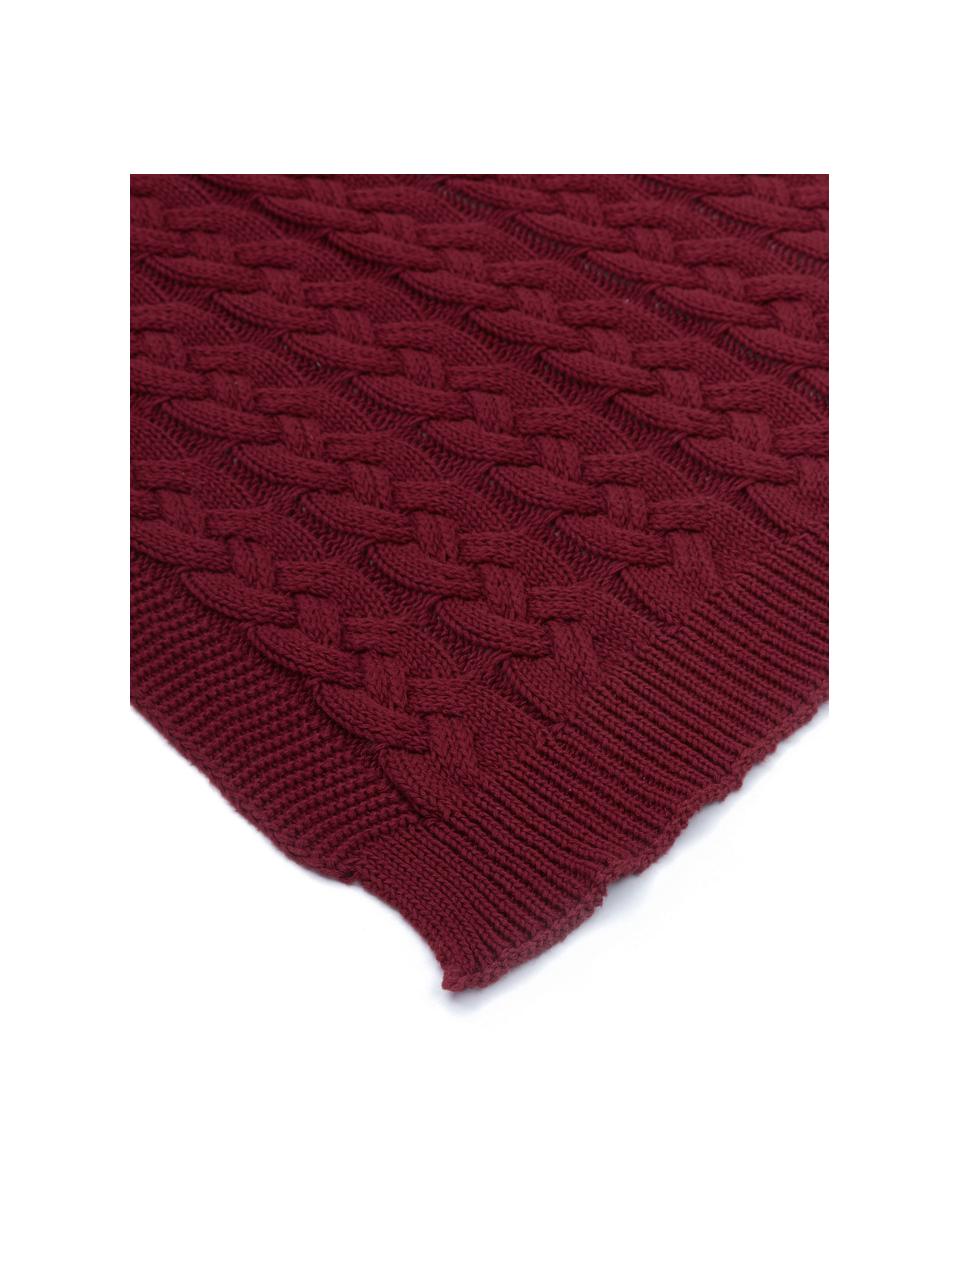 Plaid fatto a maglia con motivo a trecce Caleb, 100% cotone, Rosso scuro, Larg. 130 x Lung. 170 cm